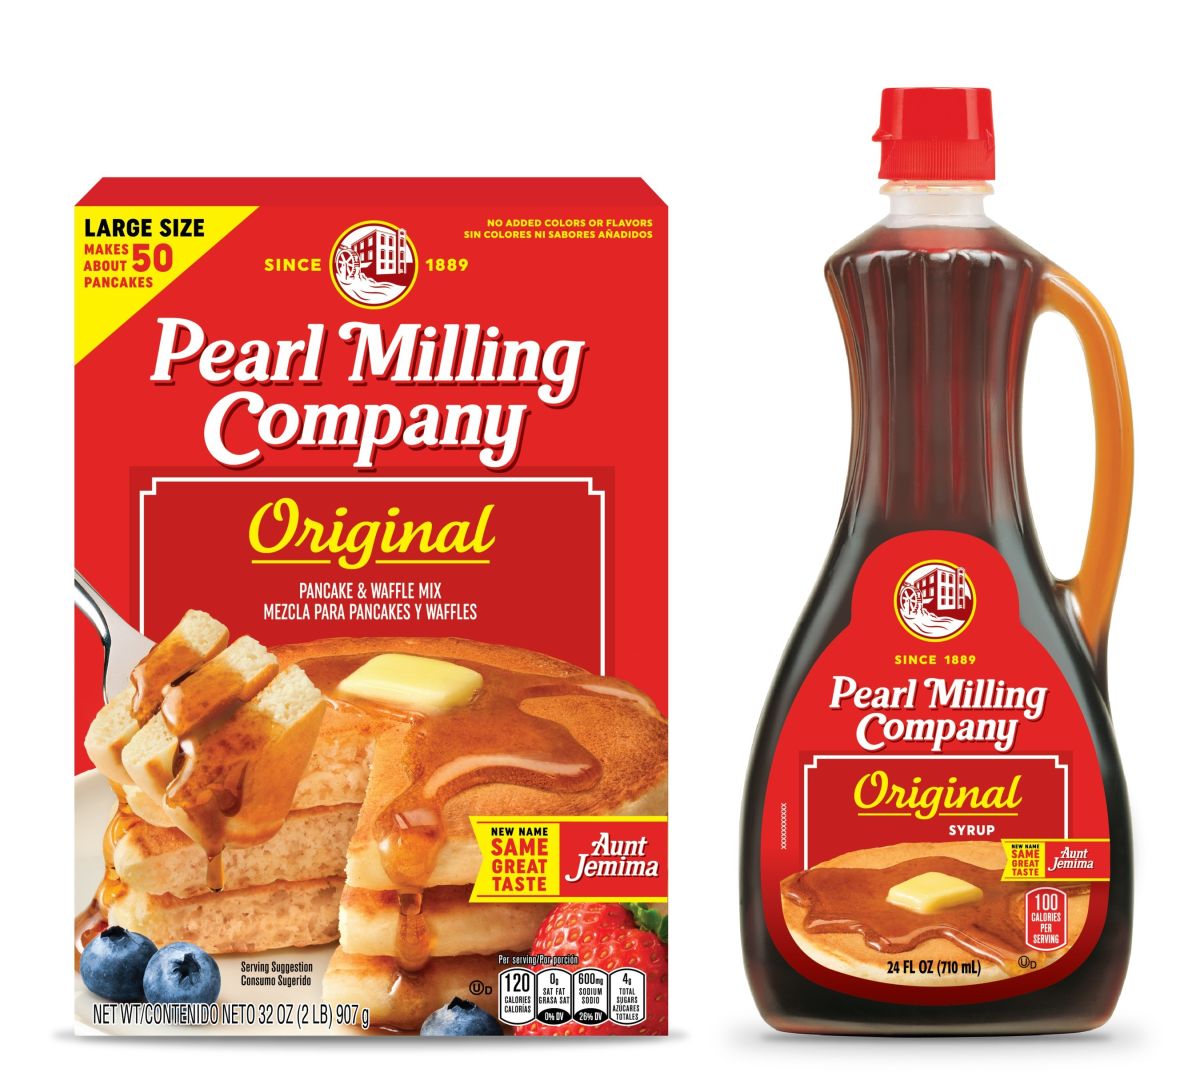 Pearl Milling Company llega a la mayoría de las tiendas del país-PRNewsfoto/PepsiCo, Inc.